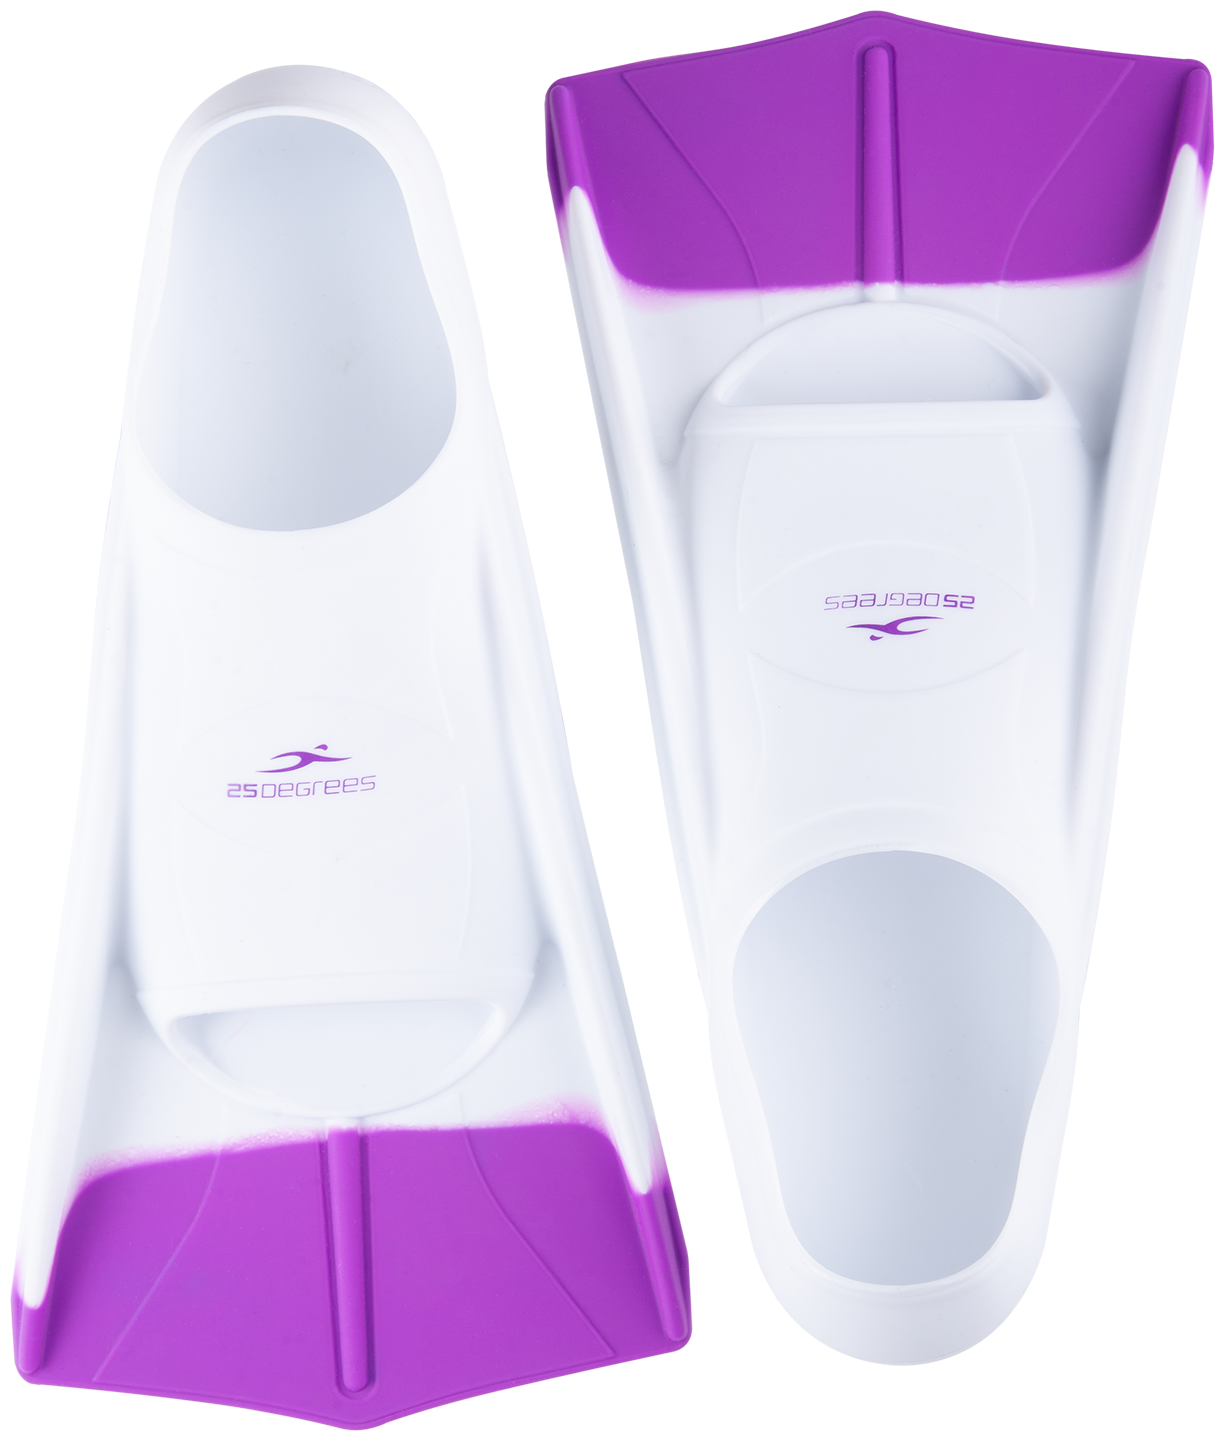 Ласты тренировочные 25degrees Pooljet White/purple, Xs